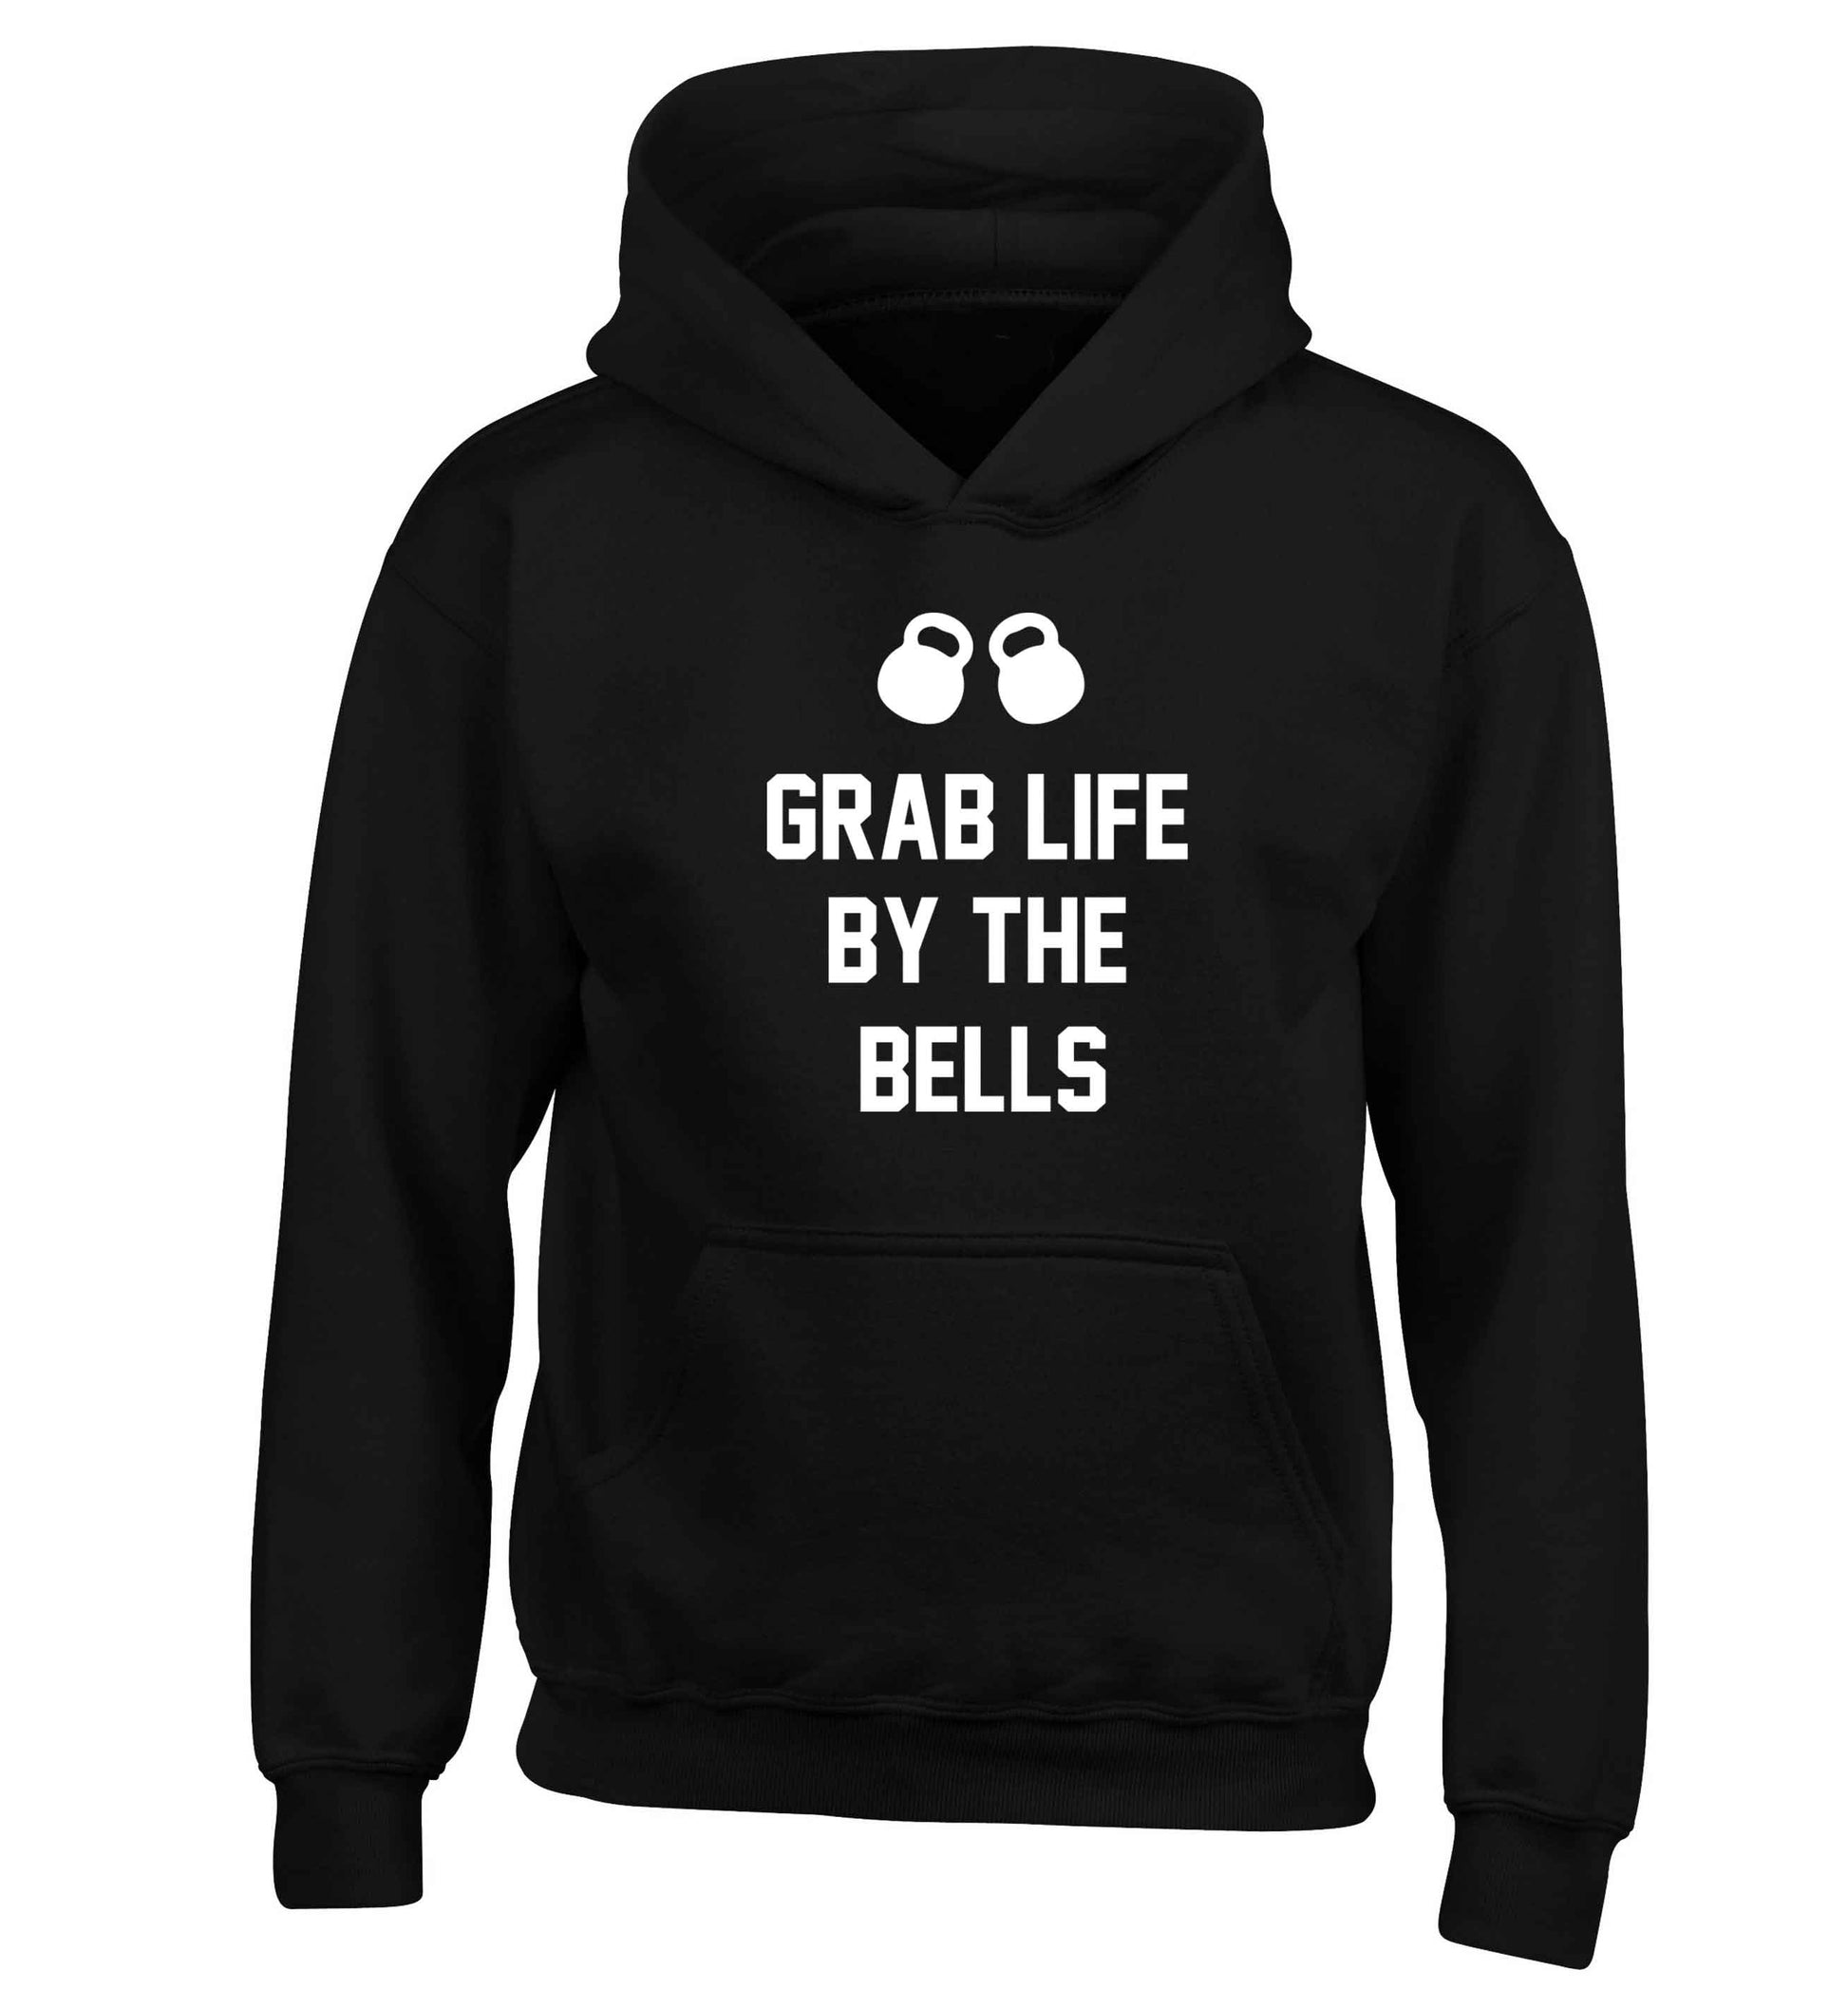 Grab life by the bells children's black hoodie 12-13 Years